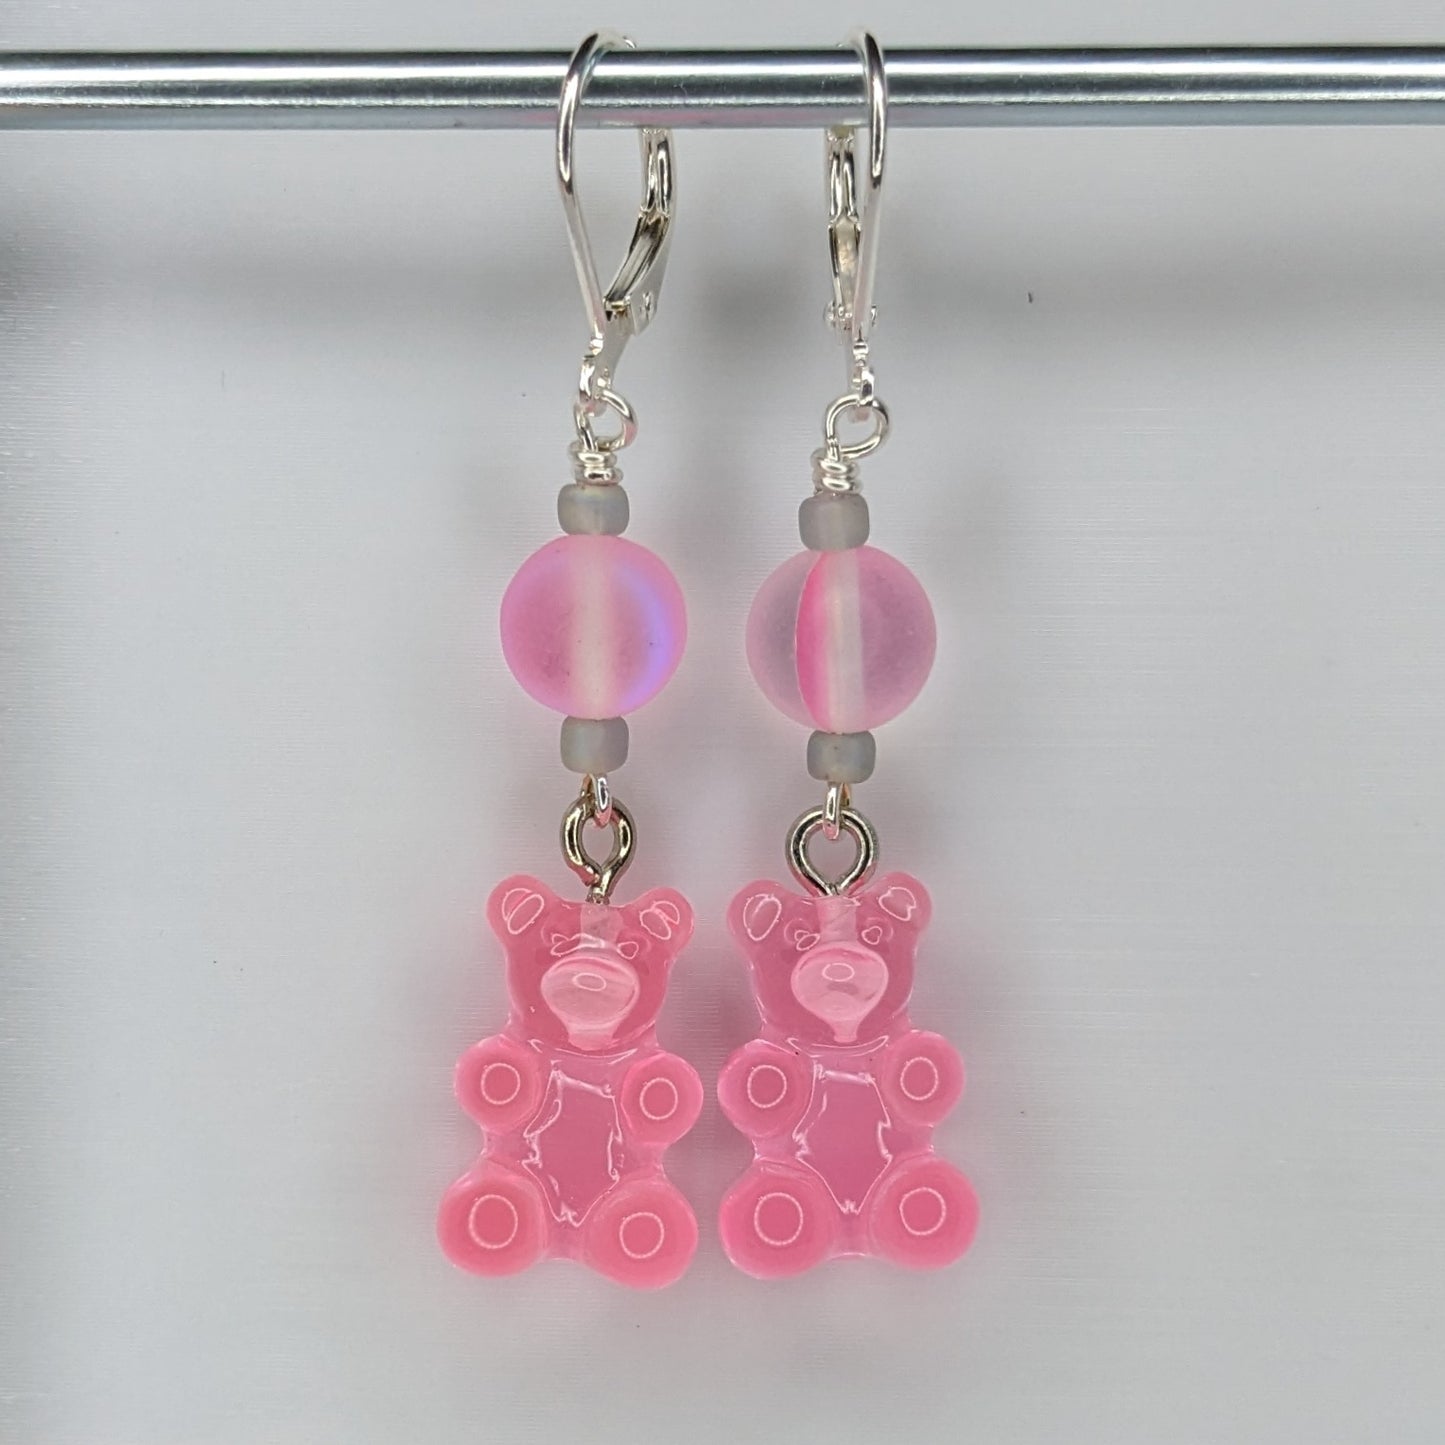 Gummy Bear Markers & Earrings